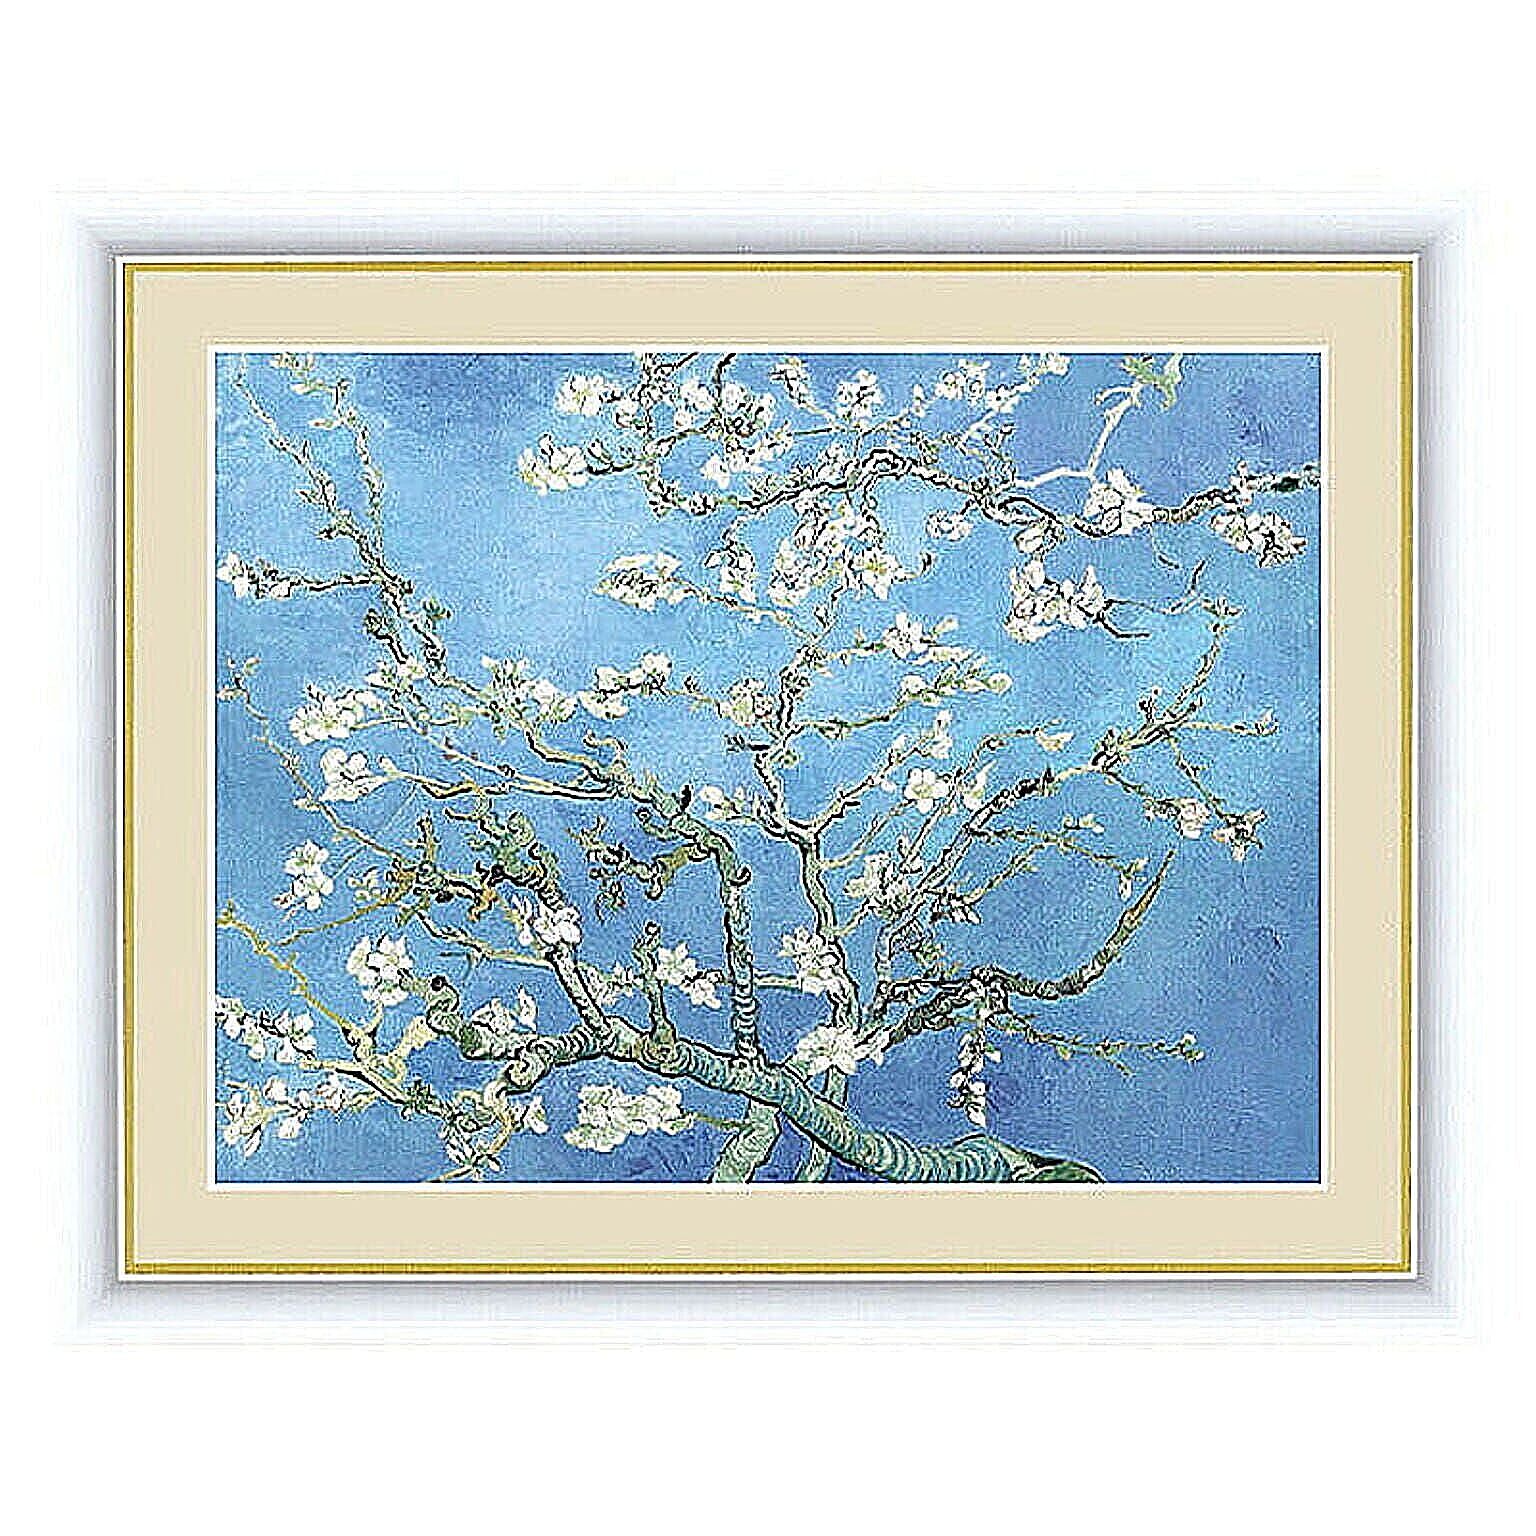 アート 額絵 花咲くアーモンドの木の枝 ゴッホ 本紙サイズ F6(約40x30cm) 額サイズ 52x42cm 三幸